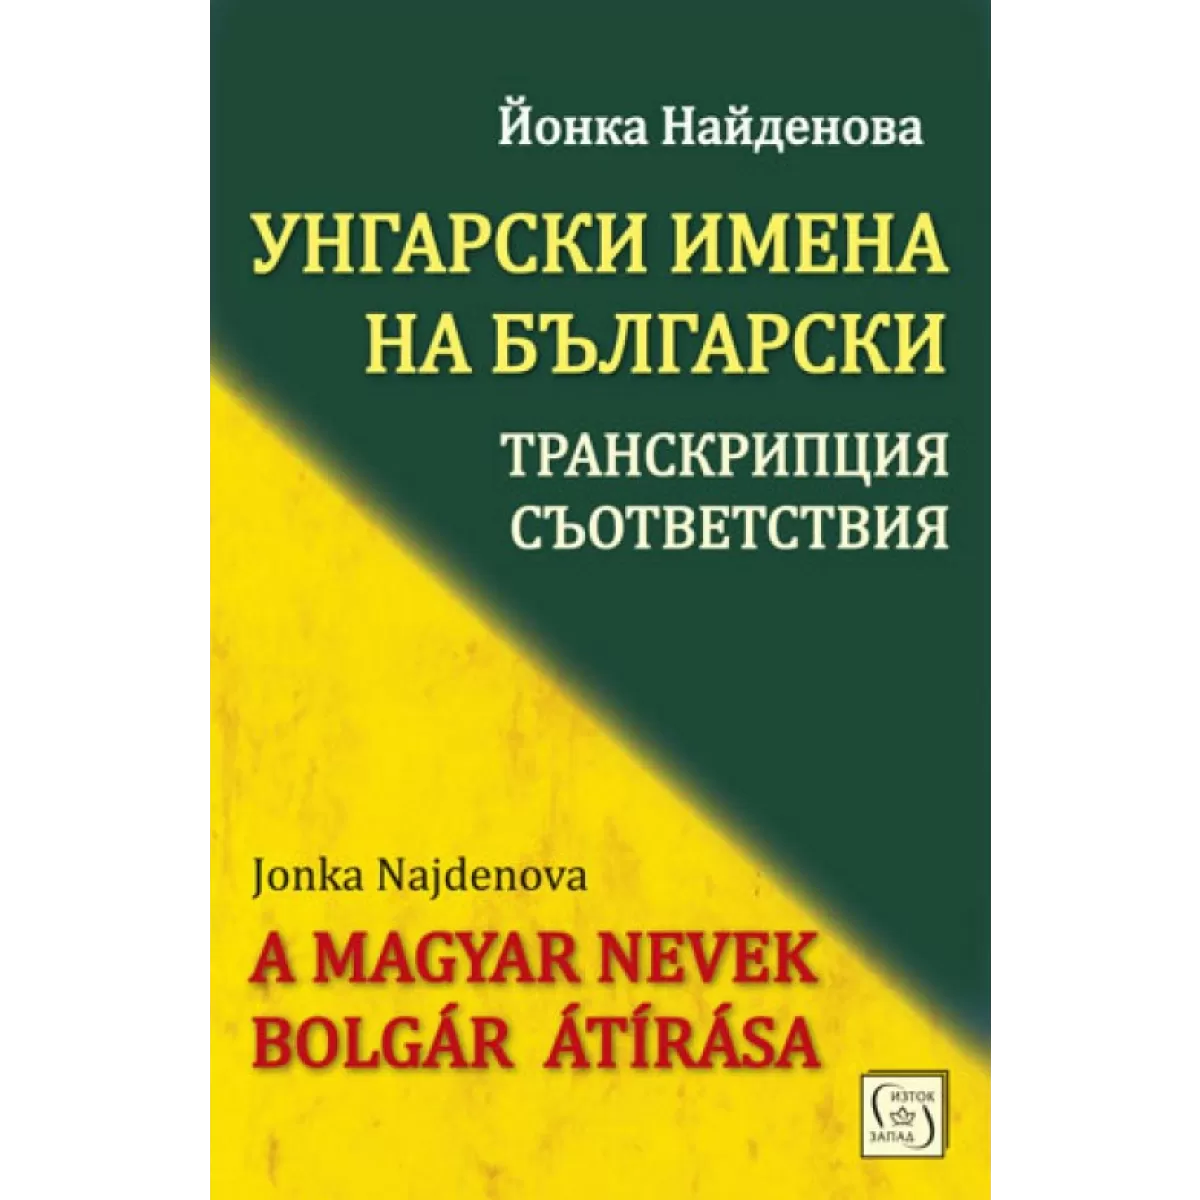 Унгарски имена на български: транскрипции, съответствия